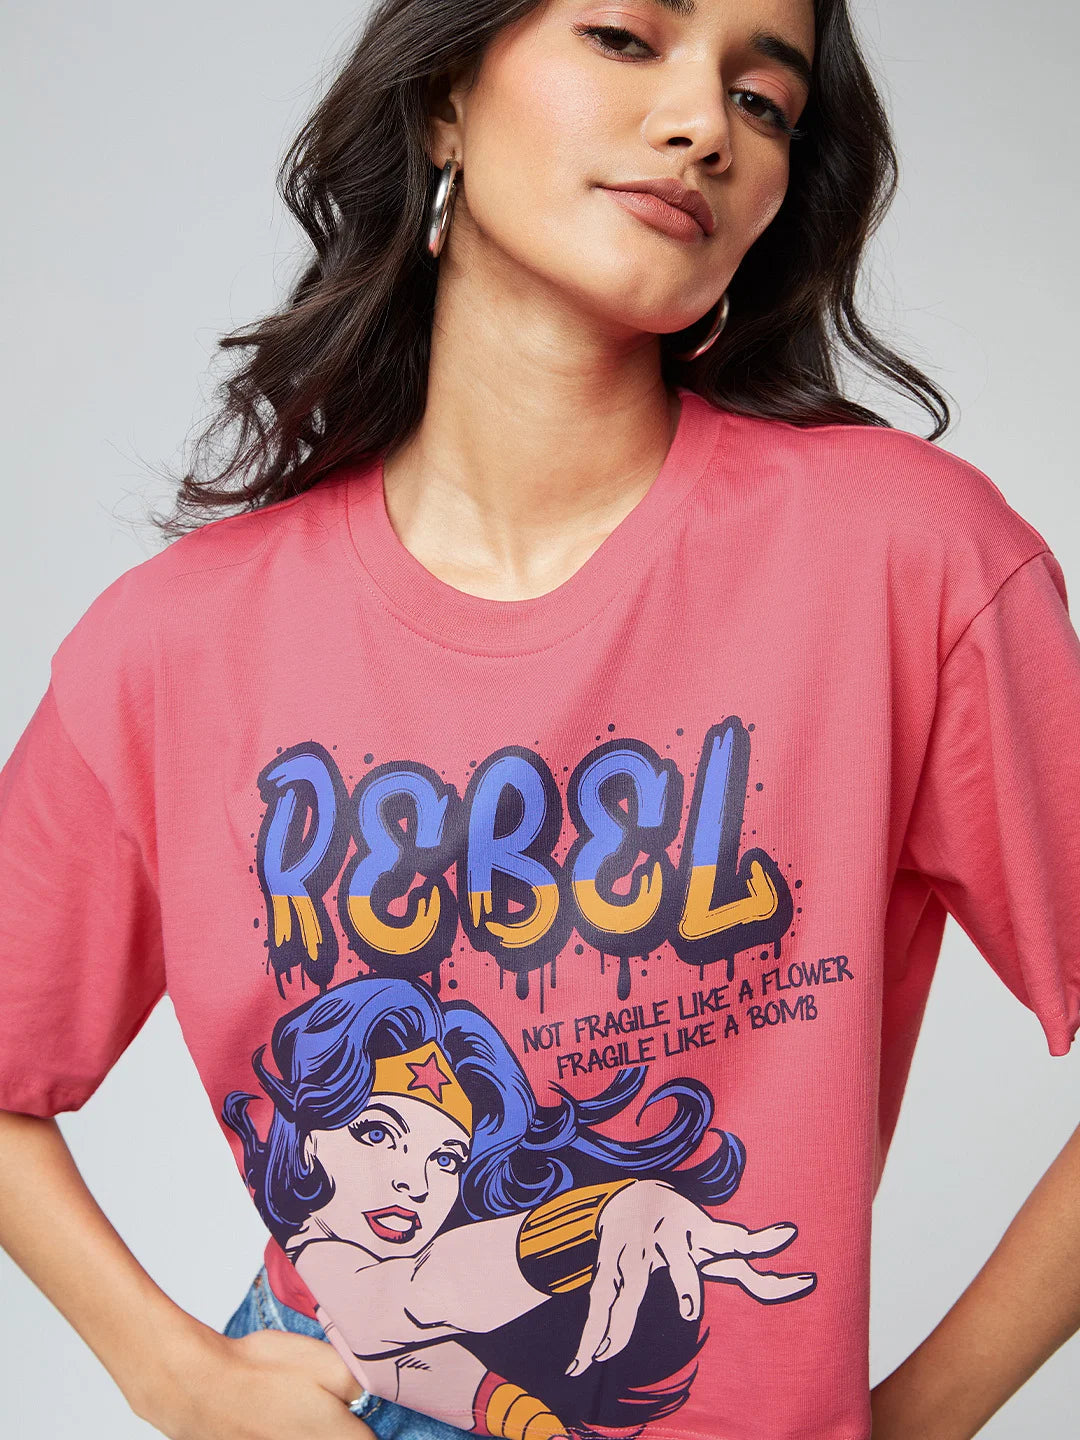 Wonder Woman Rebel (UK version)